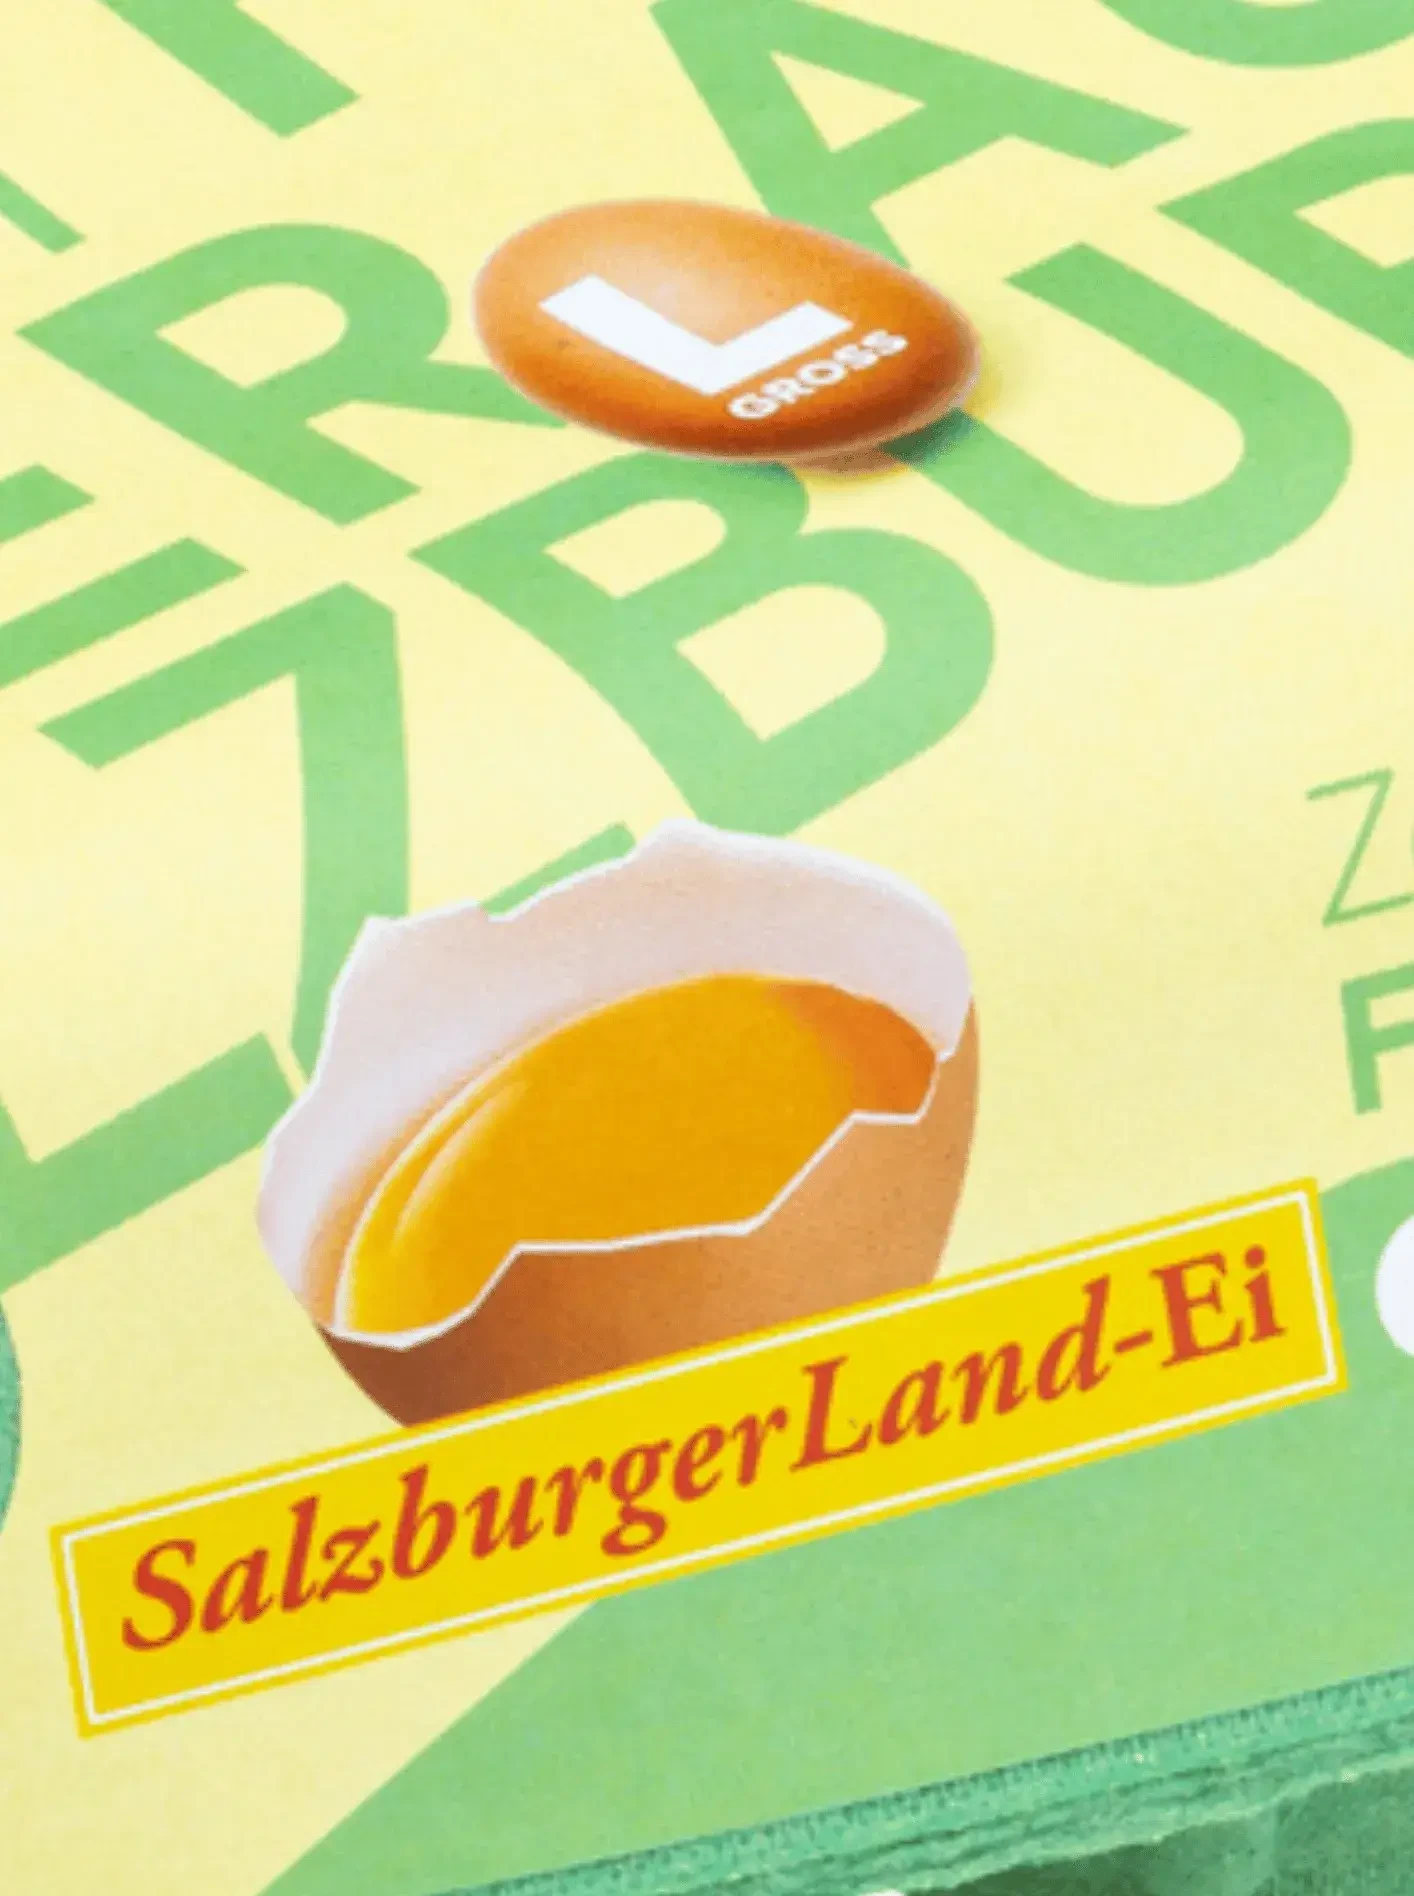 SalzburgerLandEi Freilandhaltung_Produktfoto hoch ©SalzburgerLand Ei